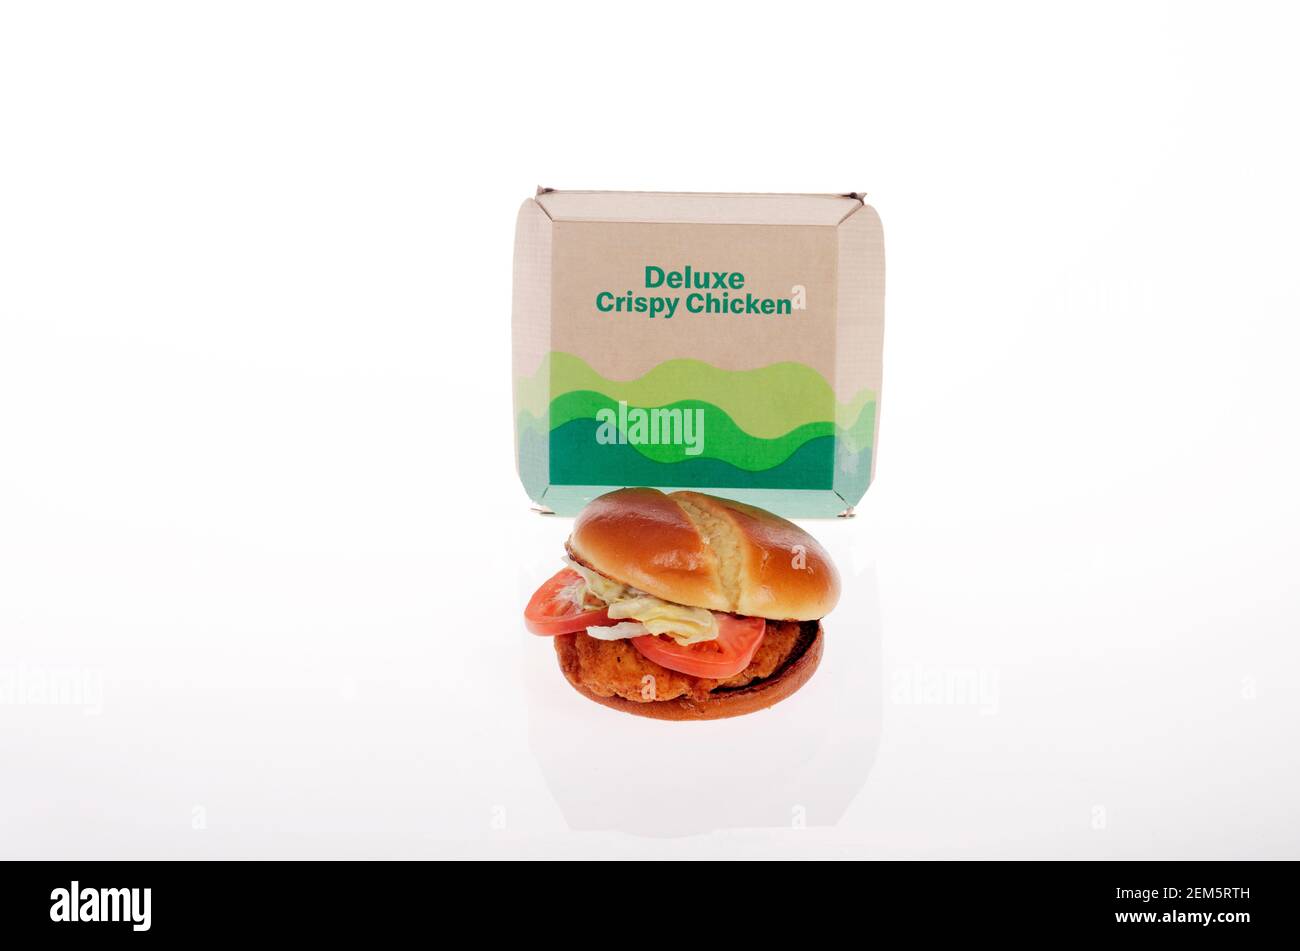 McDonalds New Deluxe Crispy Chicken Sandwich & Box sorti le 24 février 2021 Banque D'Images